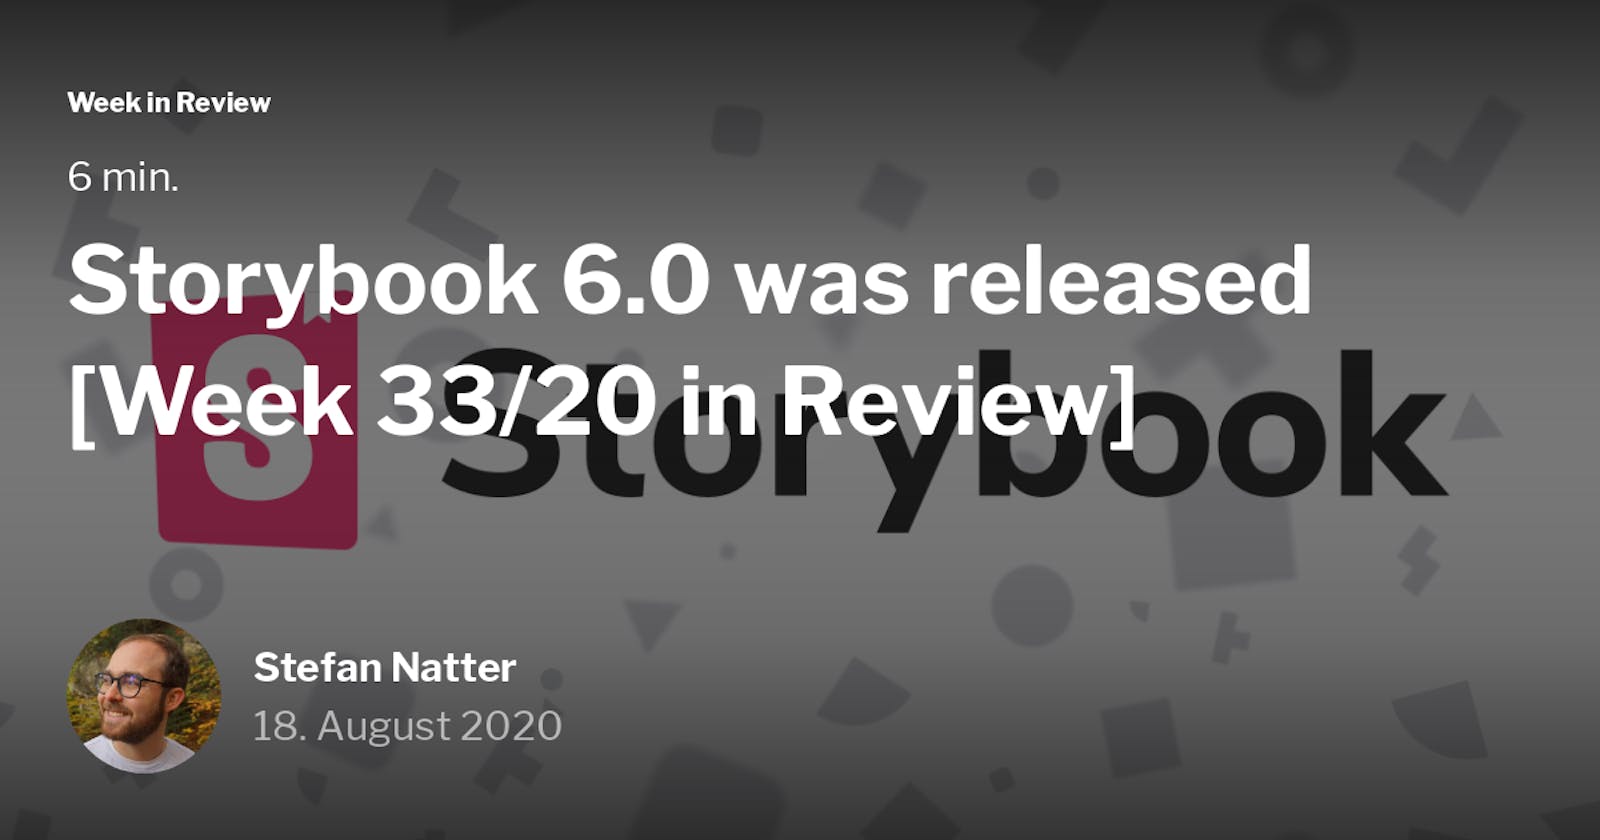 Storybook 6.0 was released [Week 33/20 in Review]